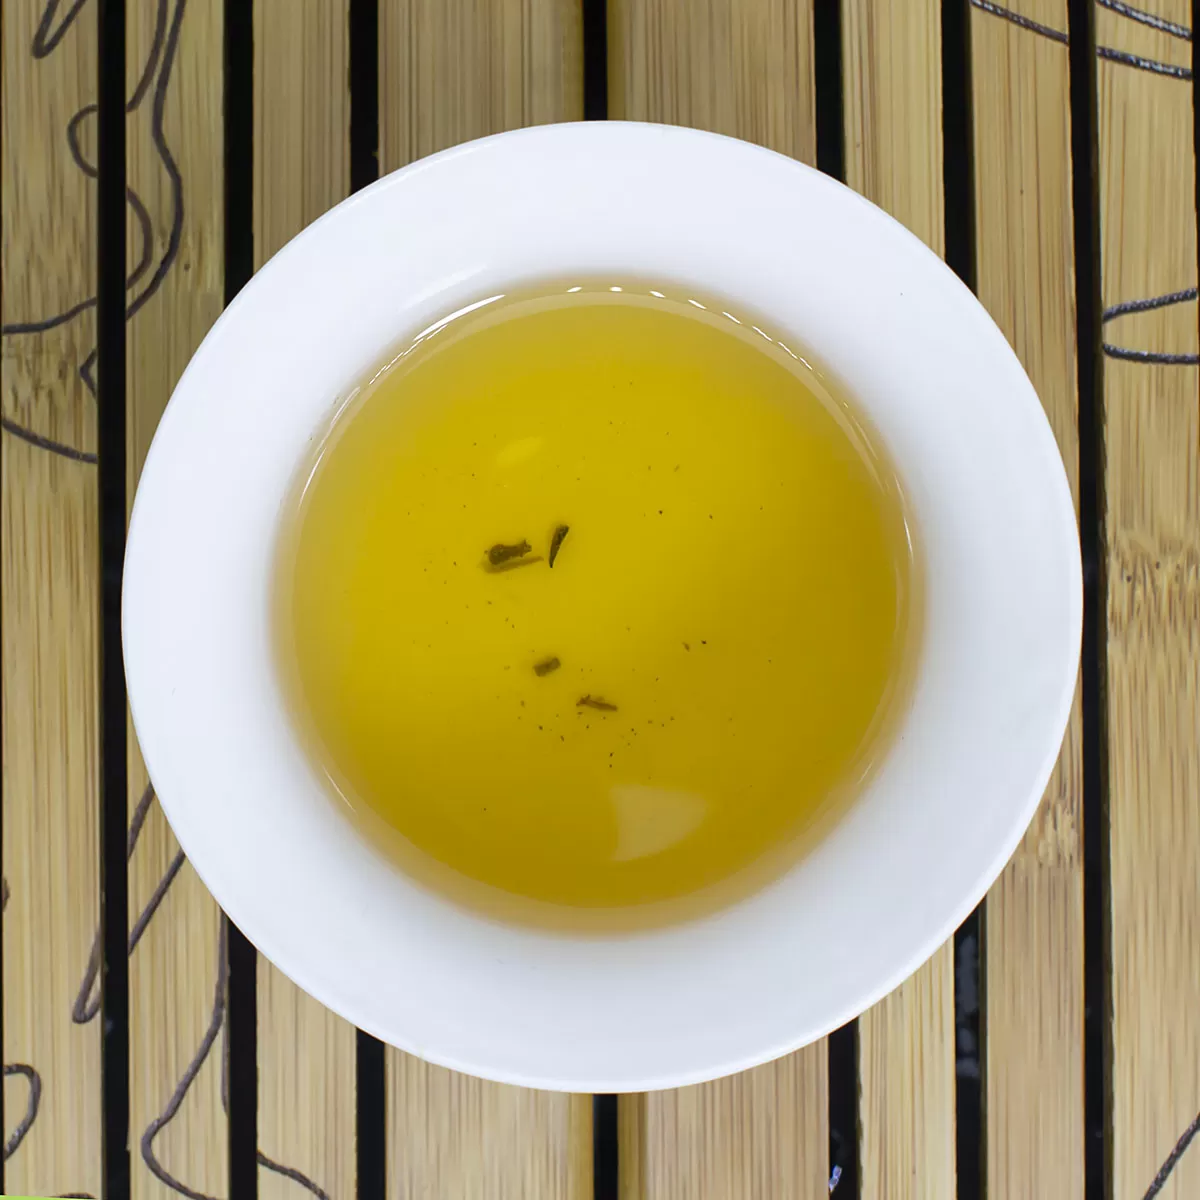 Зеленый чай Жасминовый пух